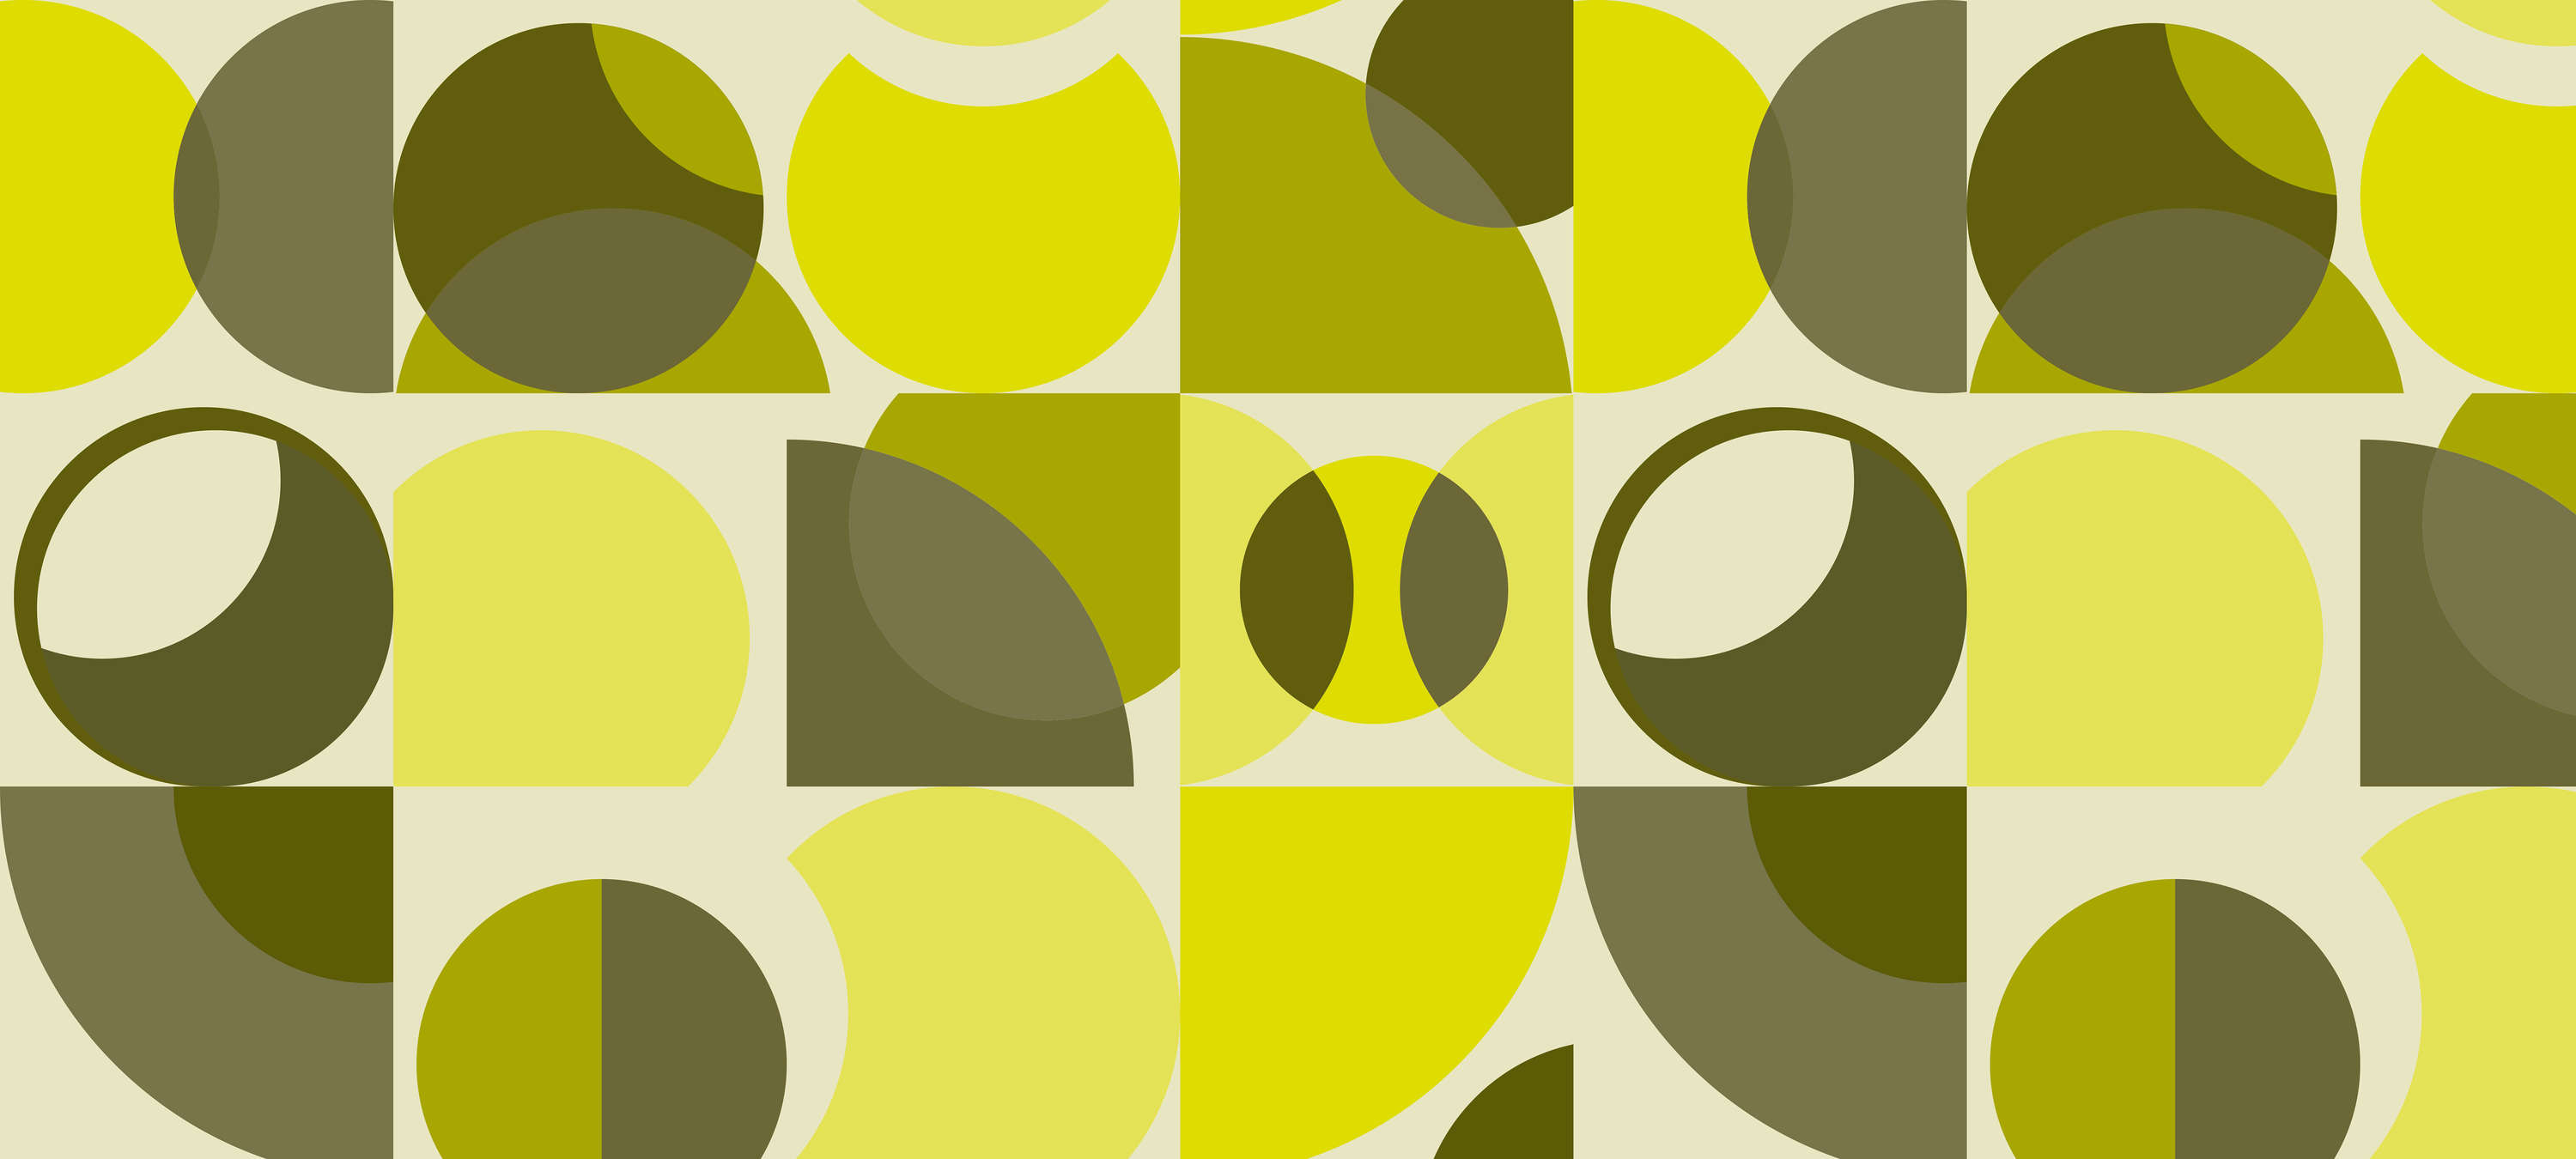             Retro Behang met Geometrisch Ontwerp - Geel, Groen, Grijs
        